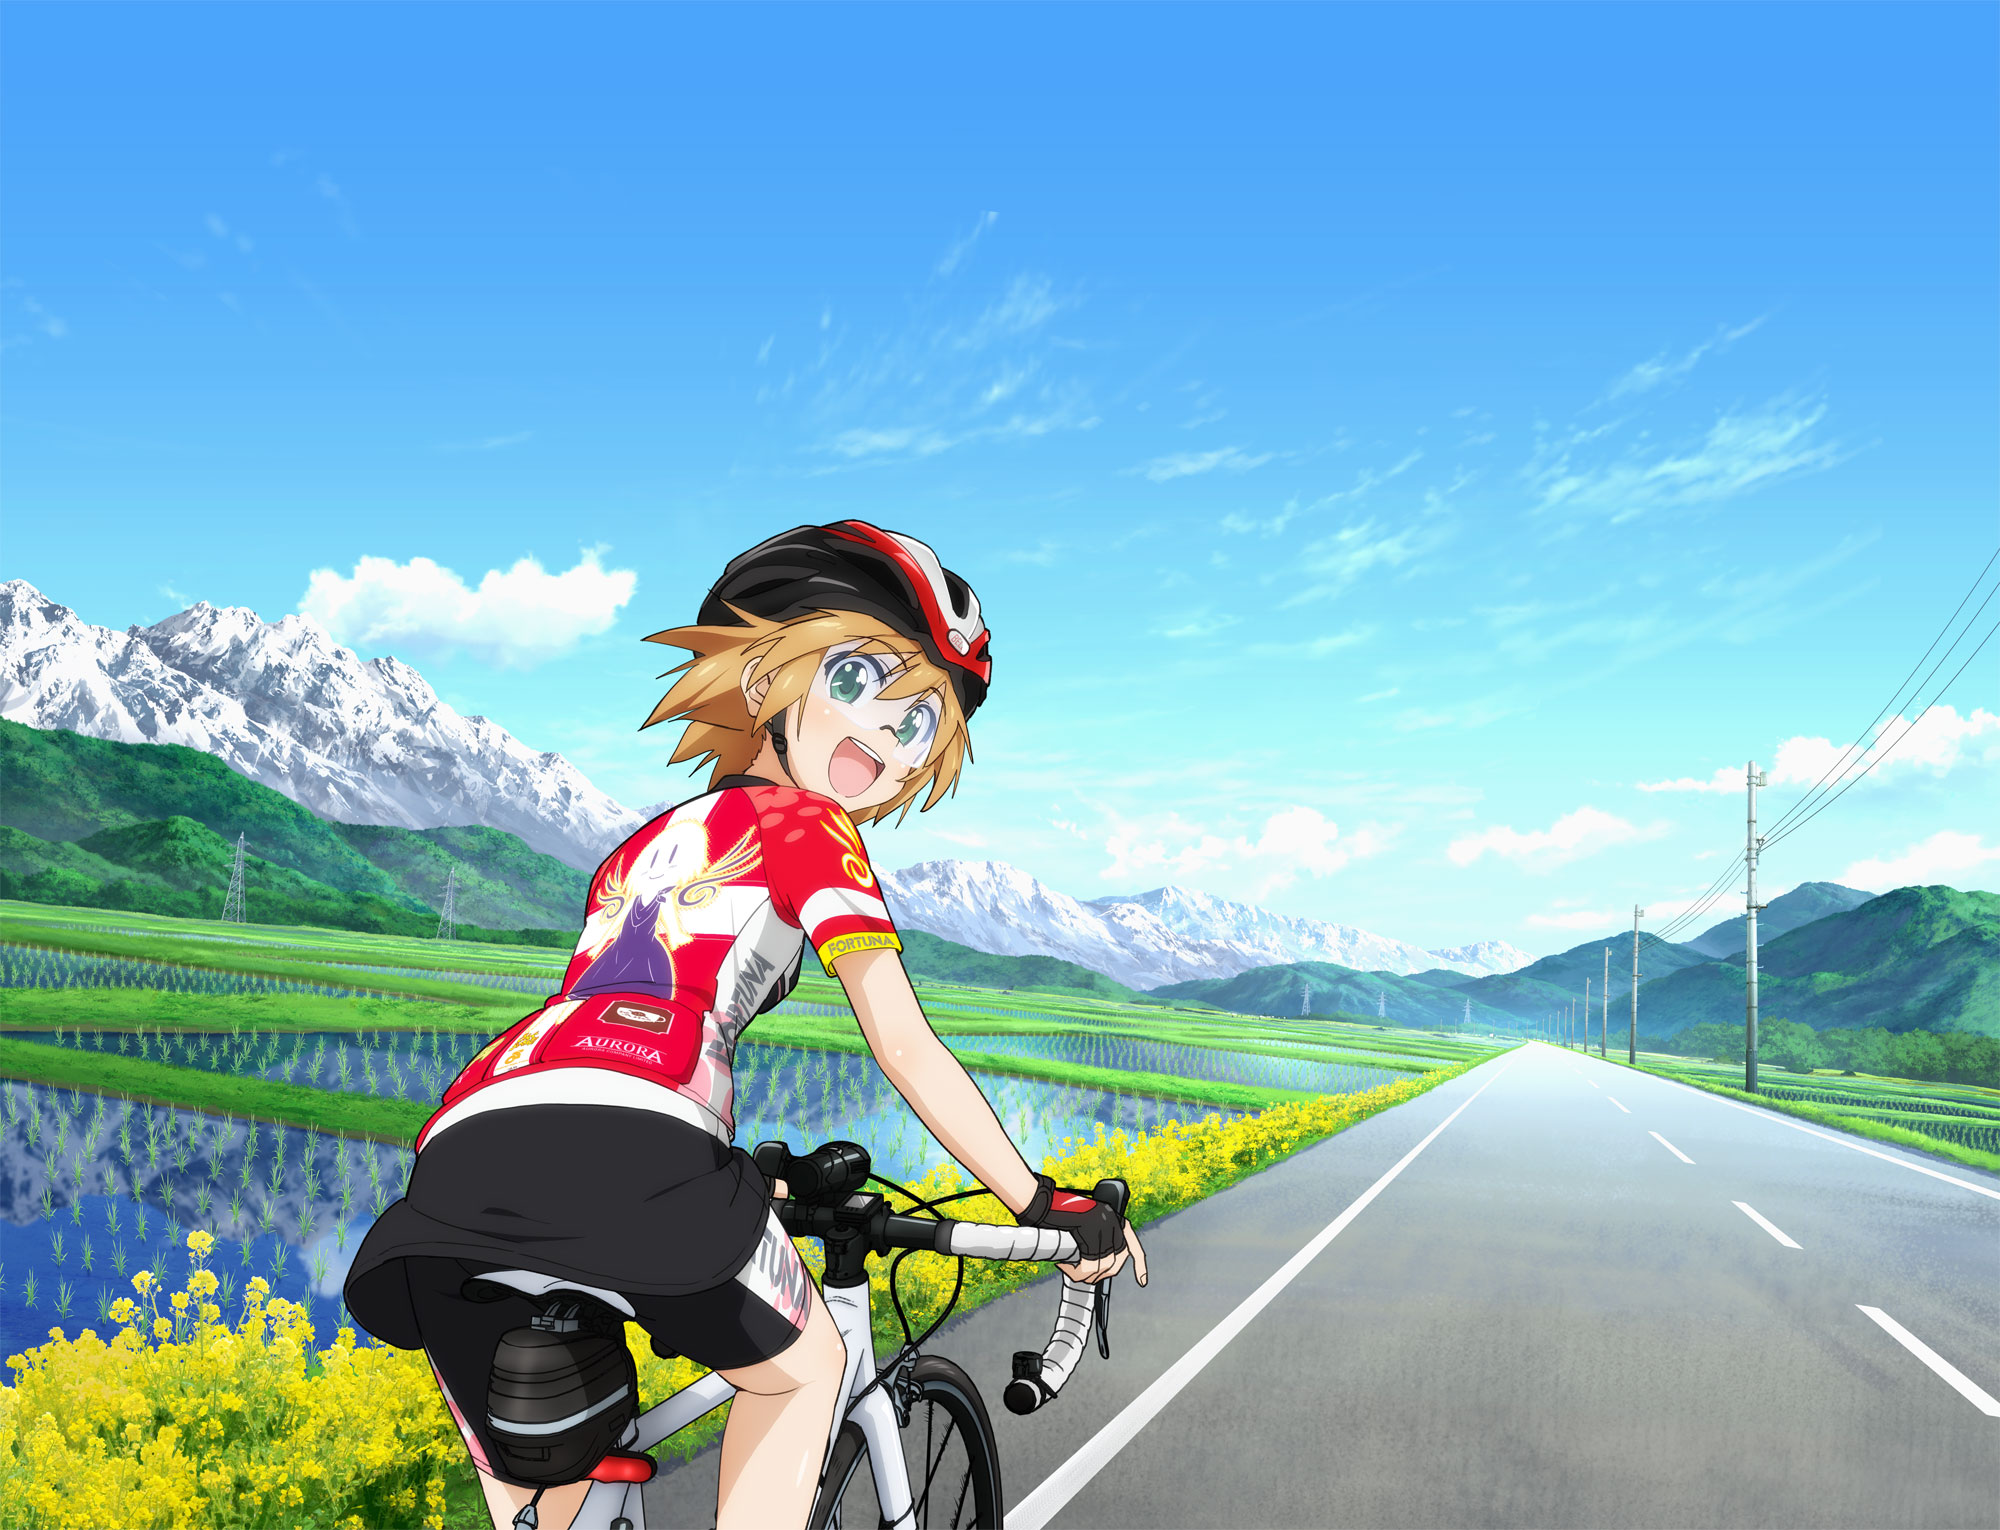 單車少女魅力滿載動畫 長騎美眉 將於16年秋季播放 Ani Channel